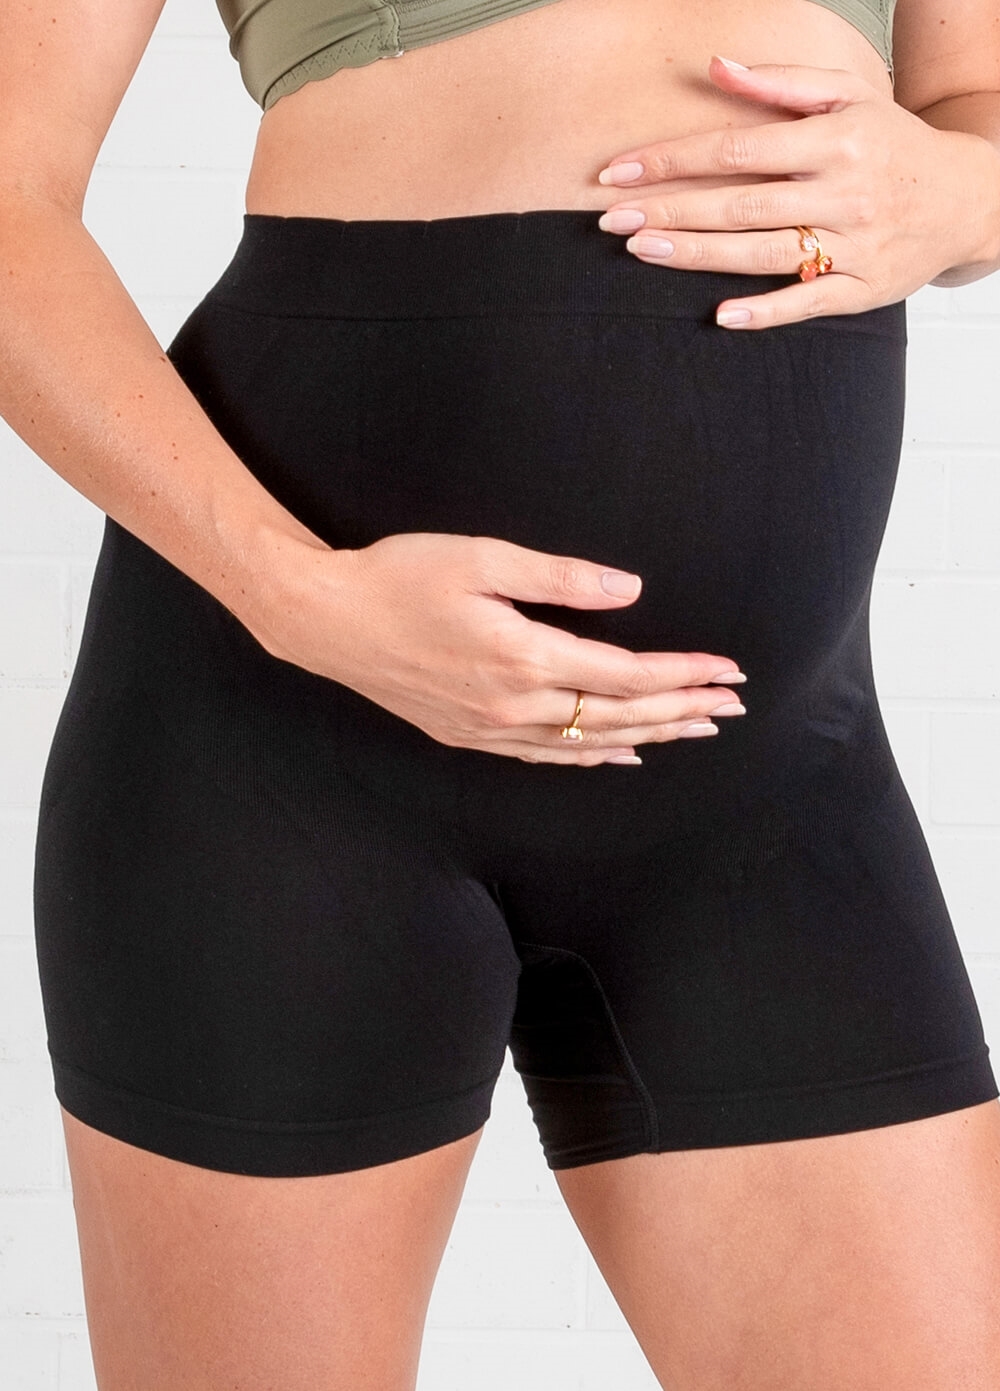 Queen Bee - Katie Over Bump Maternity Under wear Shorts in Black